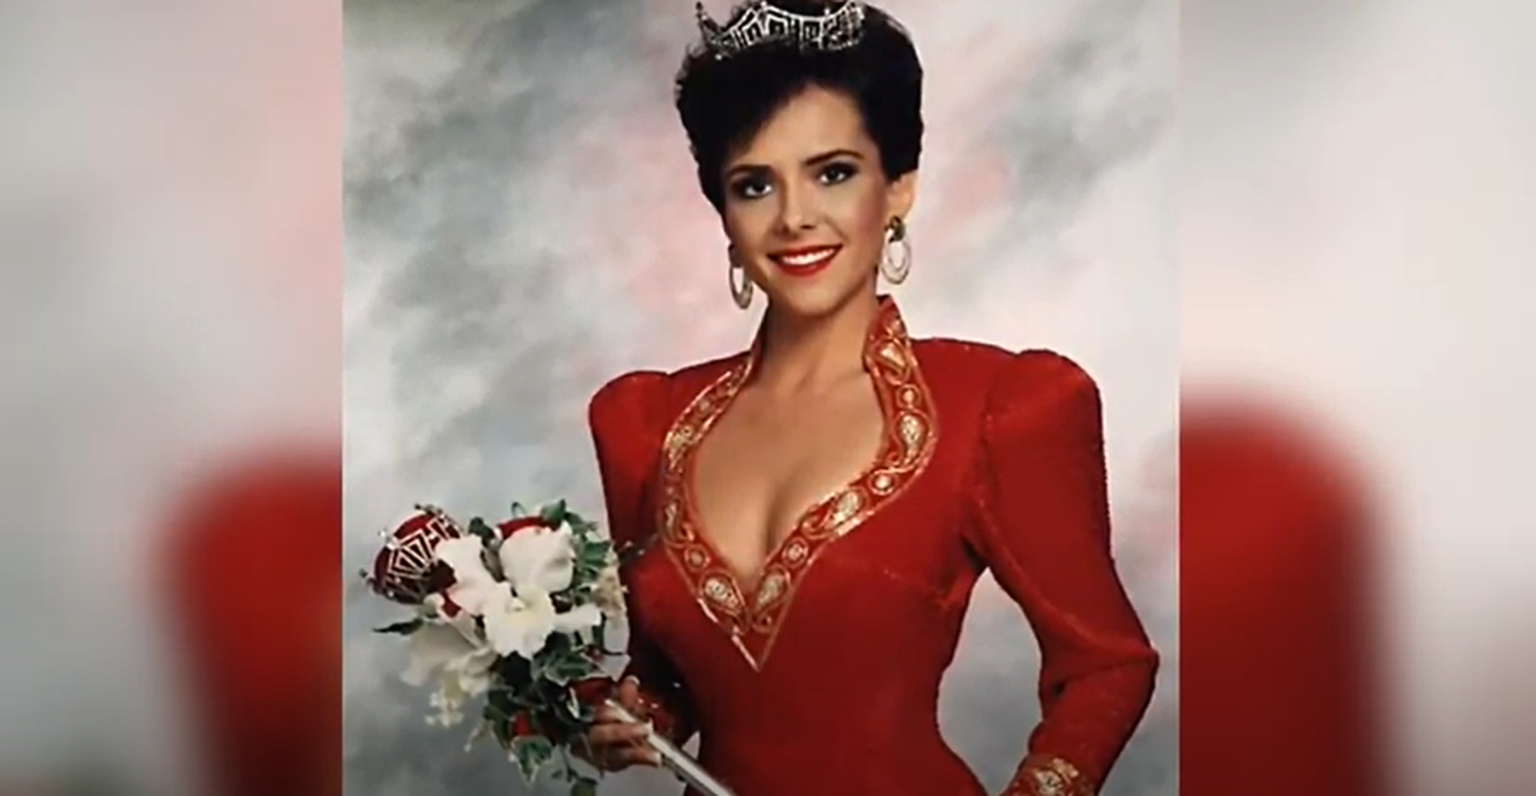 Leanza Cornetti võitis Miss America tiitli 1993. aastal.